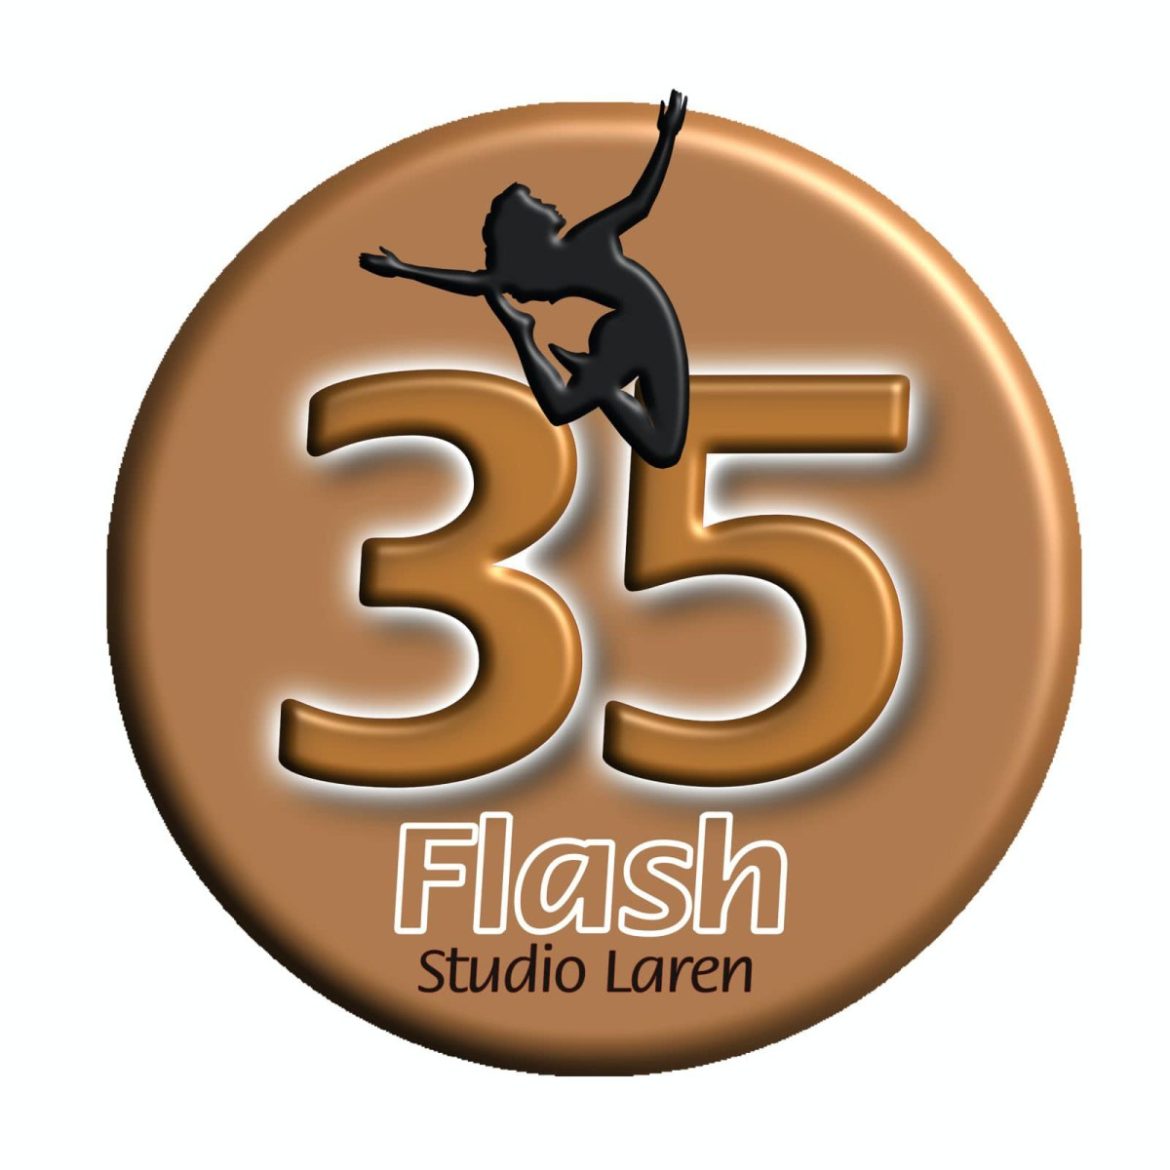 Flashstudiolaren bestaat 35 jaar!